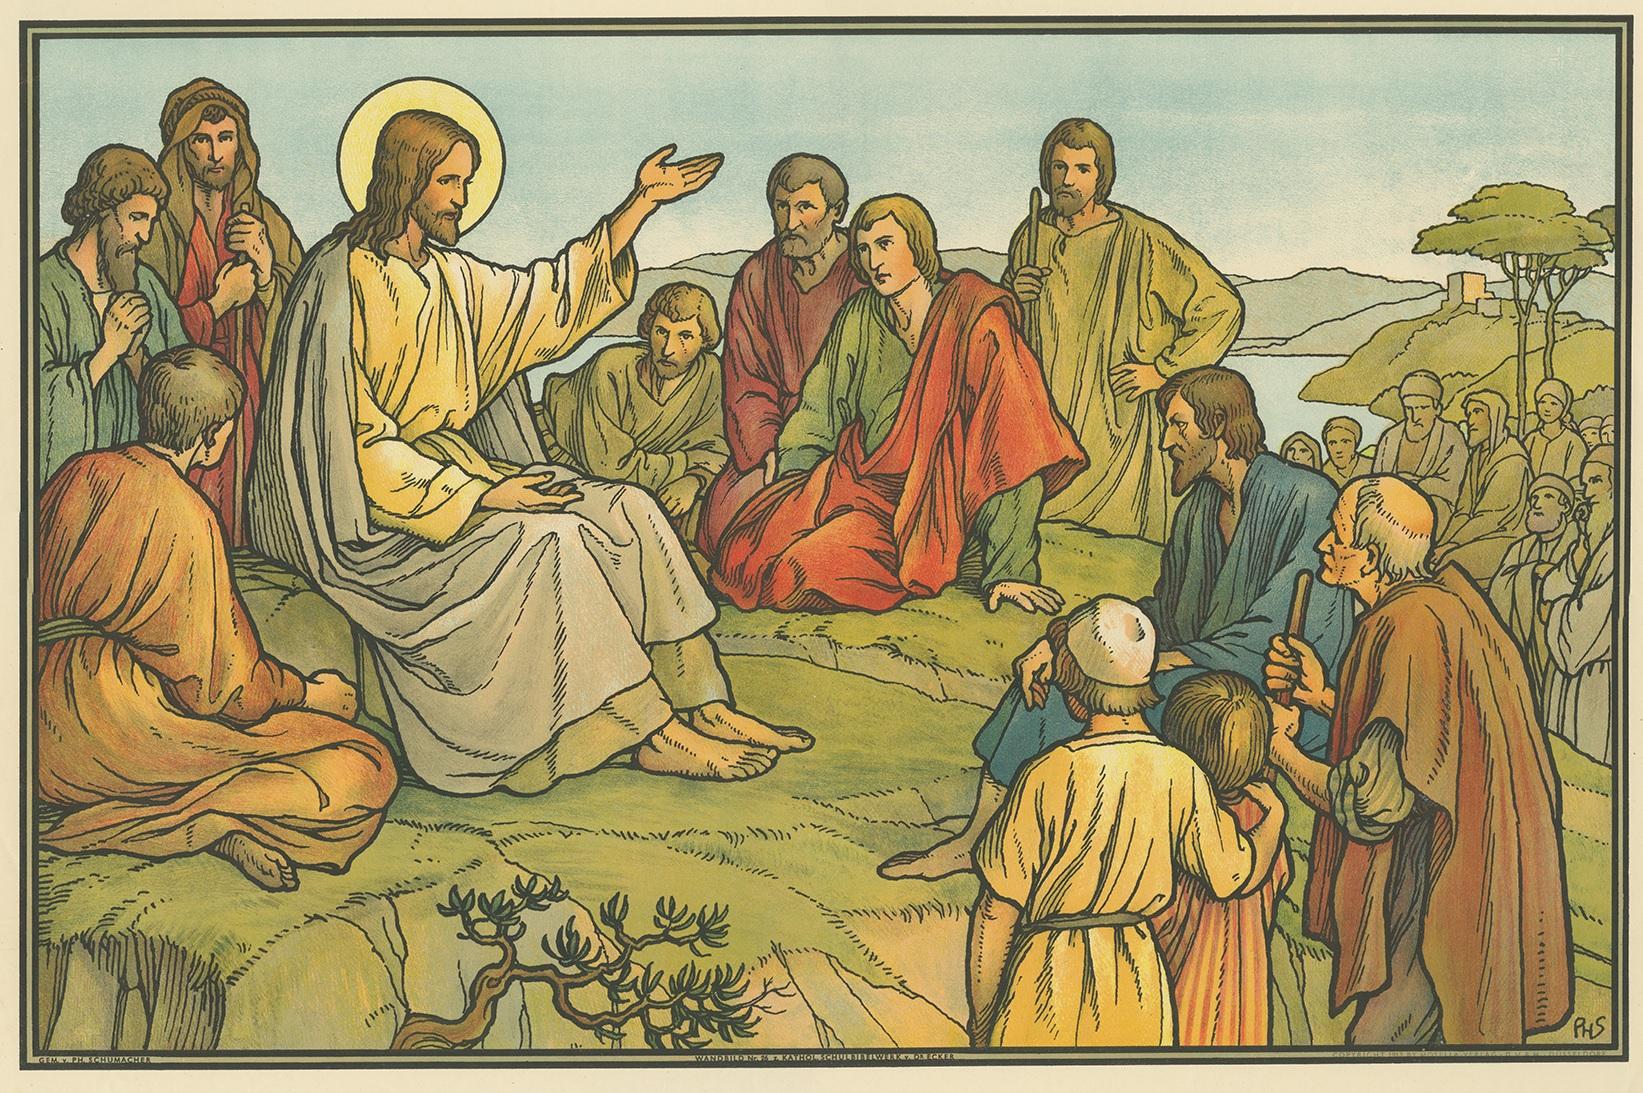 Großer antiker Druck der Bergpredigt. Erschienen im Mosella-Verlag, 1913. Dieser Druck stammt aus einer Serie mit dem Titel 